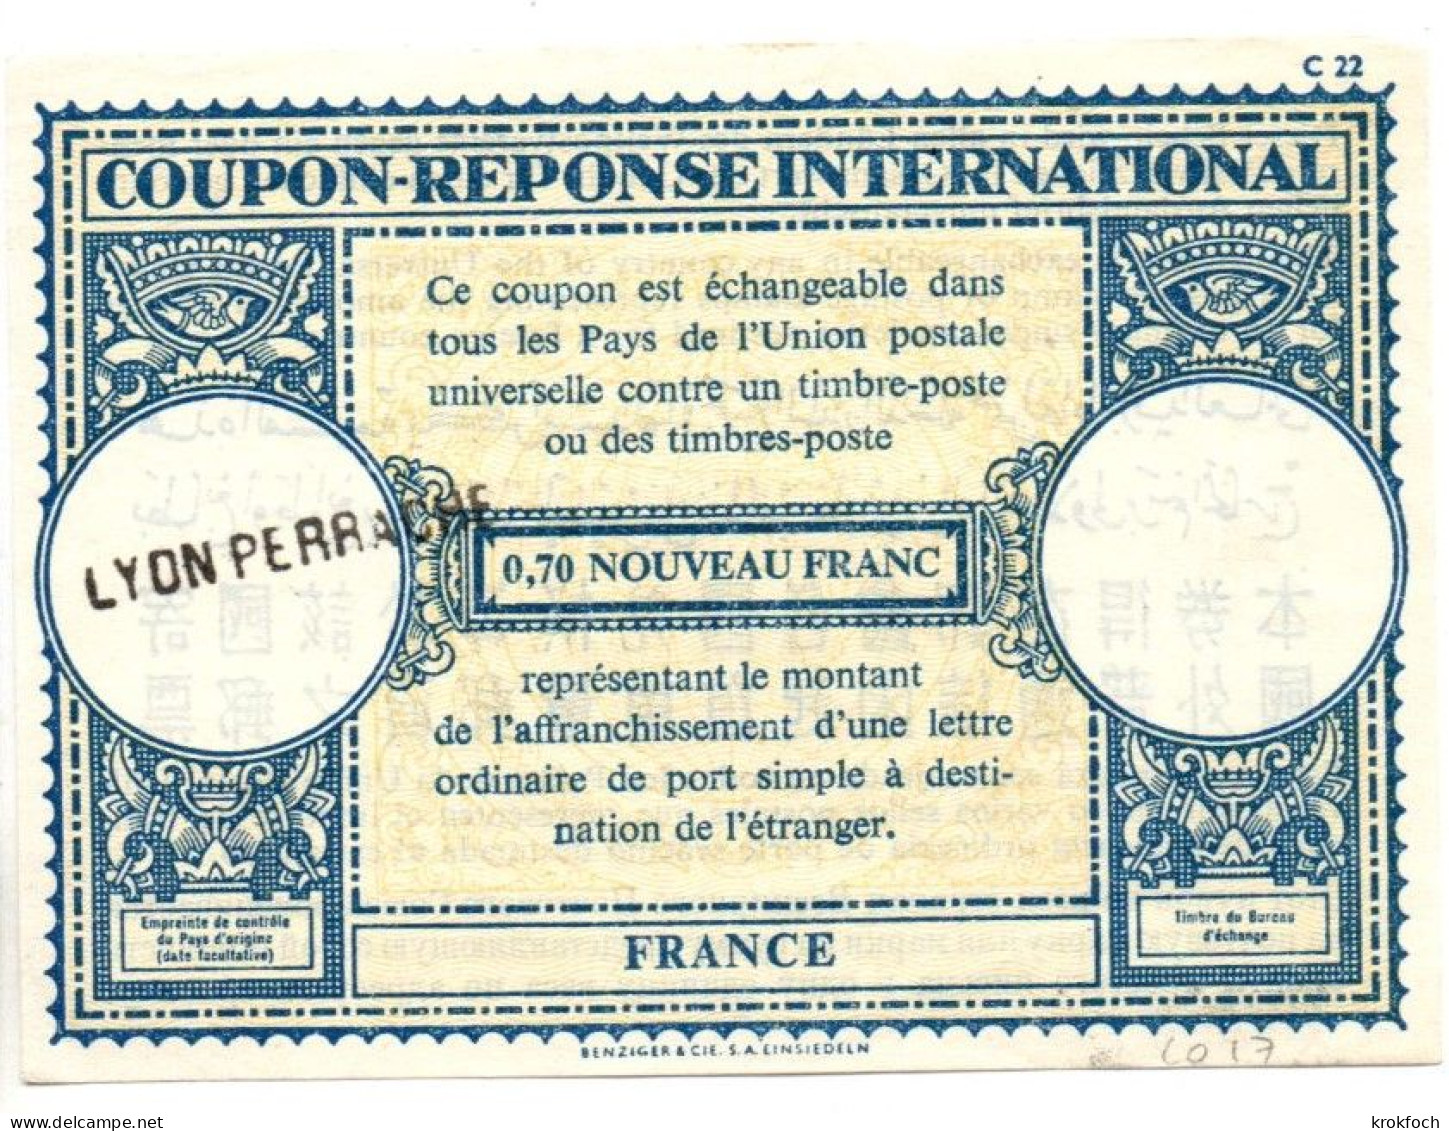 CR France Type Londres L0 17 - 0,70 Nouveau Franc - Griffe Lyon Perrache - CRI IRC - Coupons-réponse